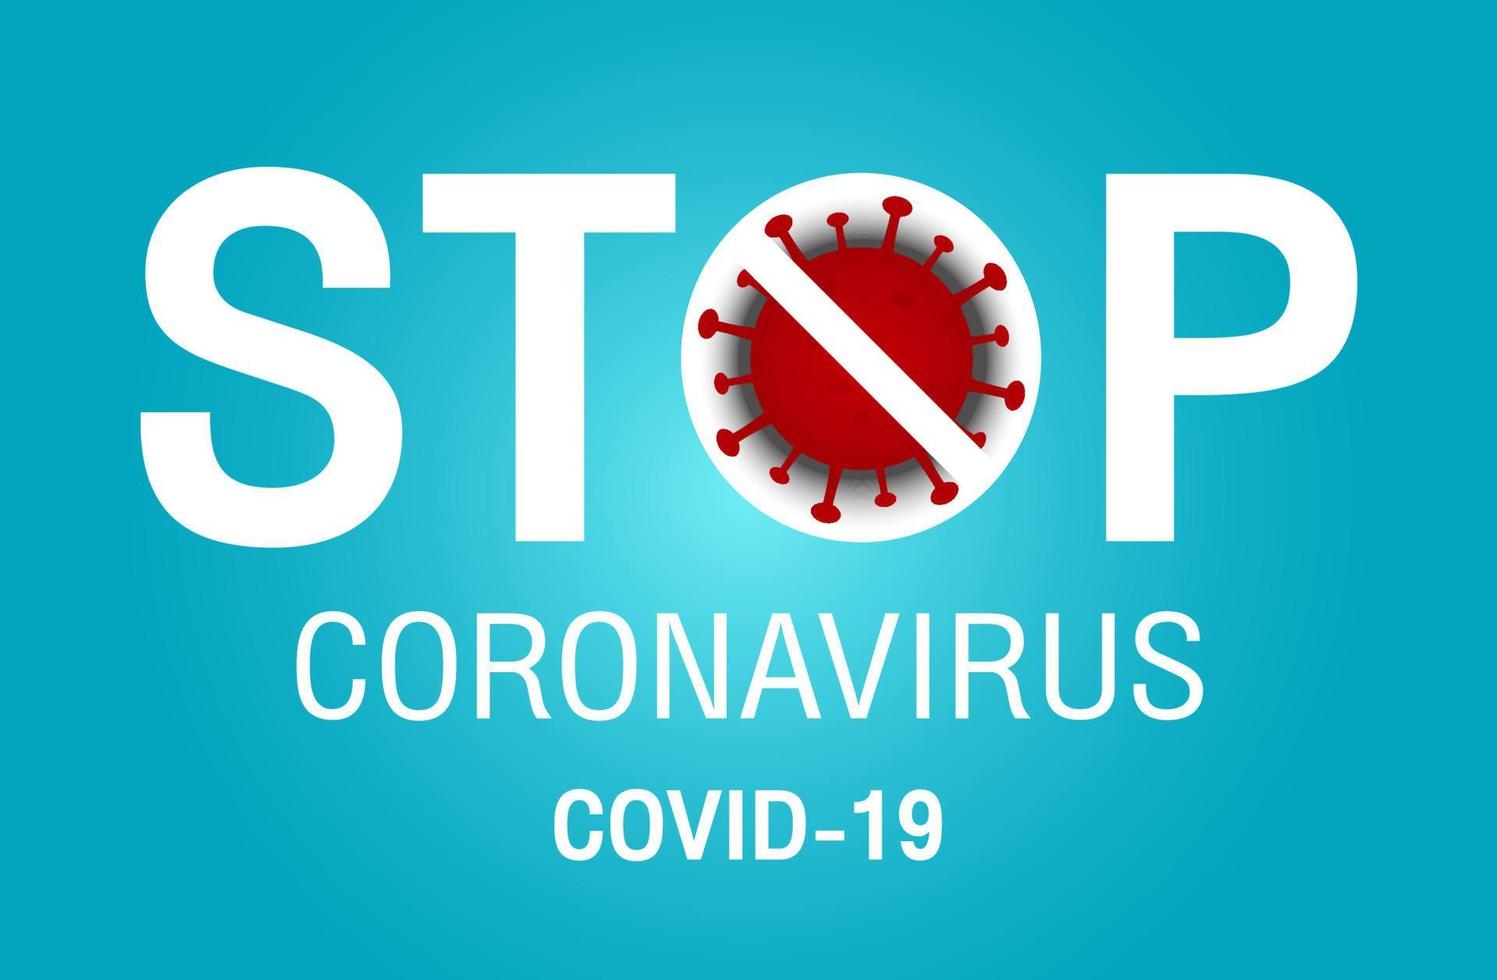 arrêtez le signe et le symbole de covid-19, concept d'illustration vectorielle coronavirus covid-19. vecteur